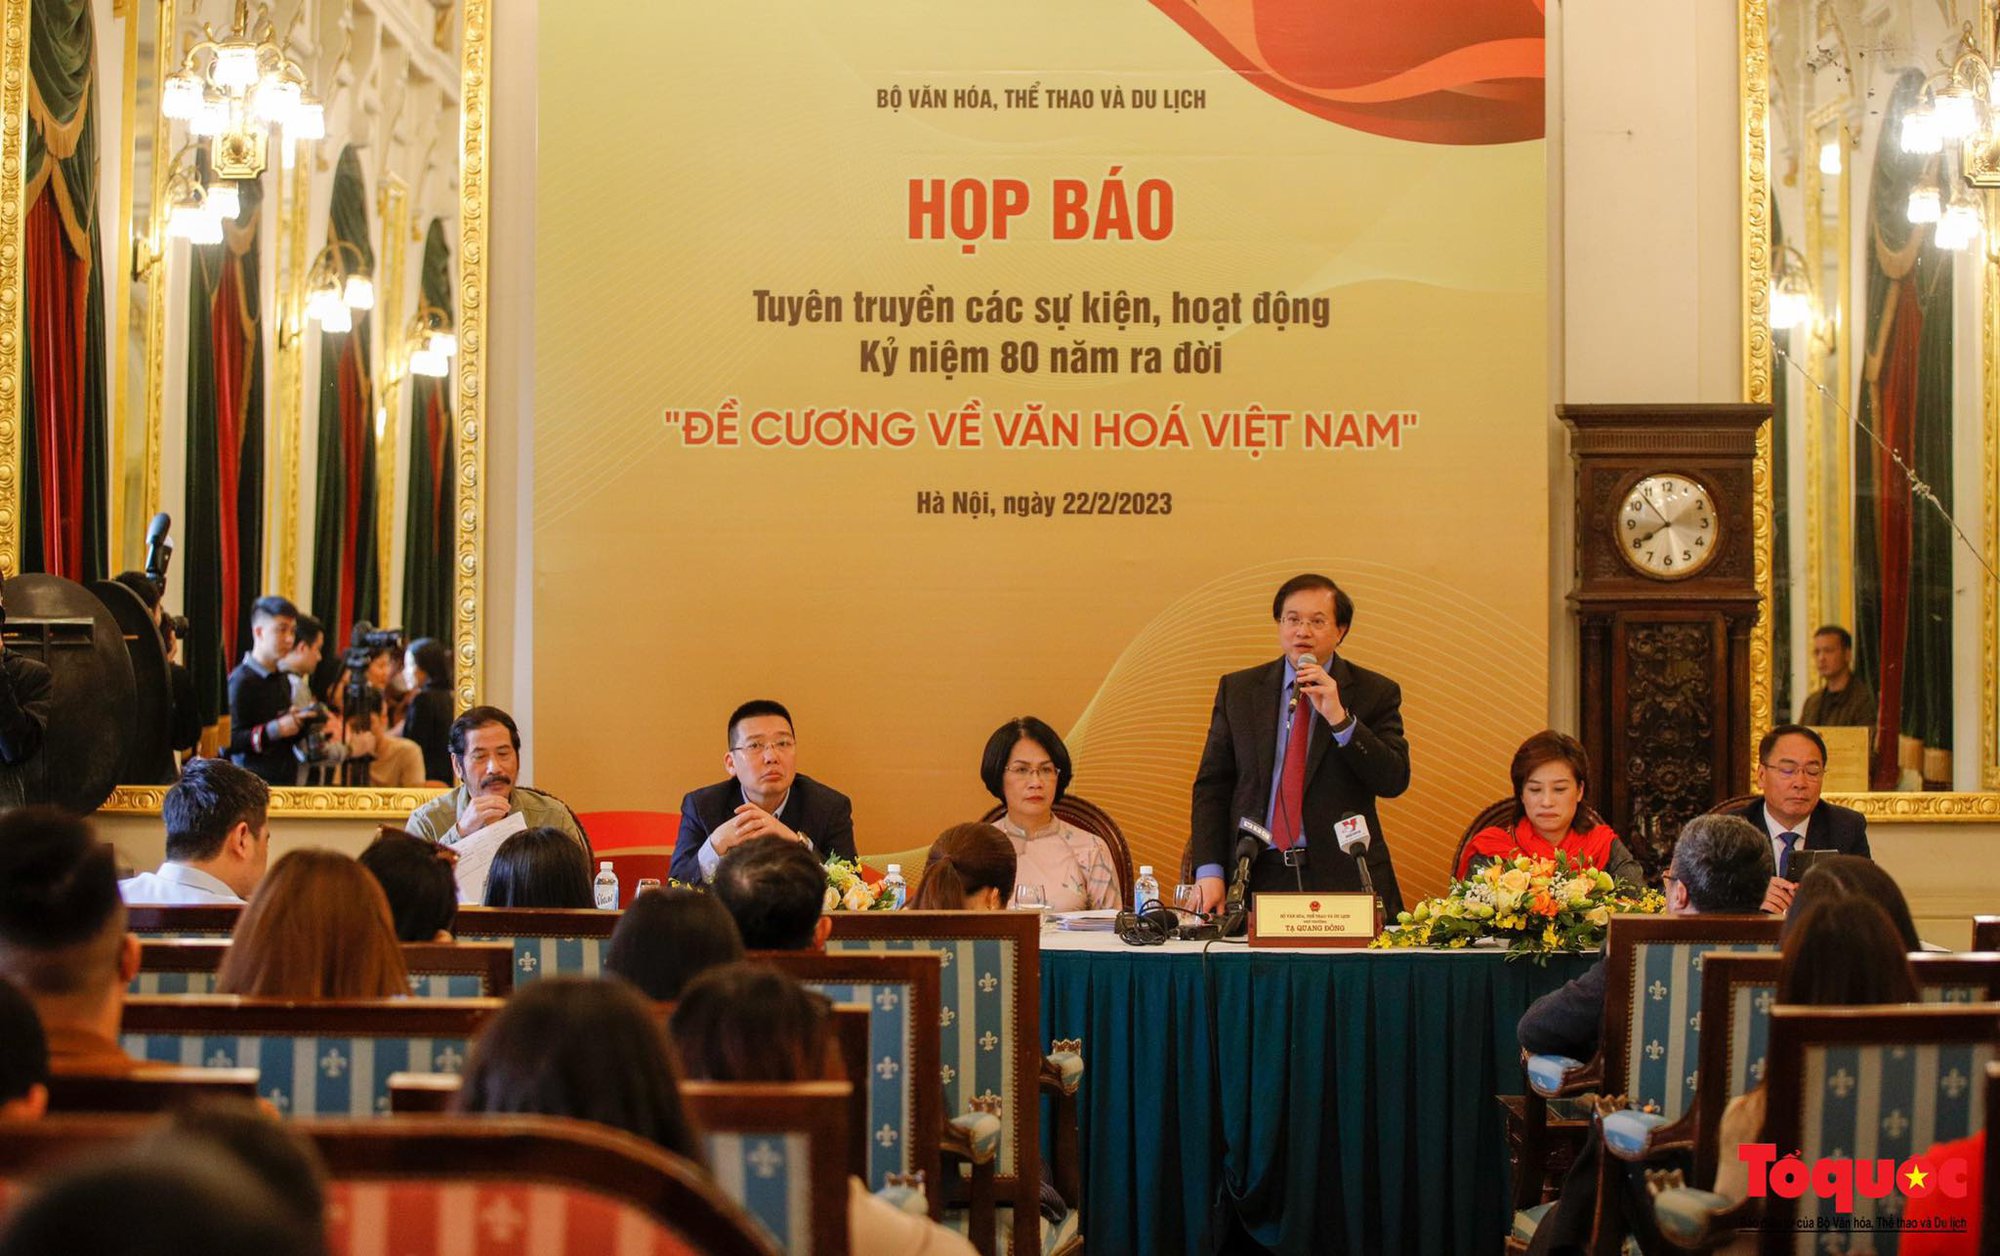 Bộ VHTTDL công bố các sự kiện kỷ niệm 80 năm ra đời Đề cương về văn hóa Việt Nam năm 1943 - Ảnh 3.